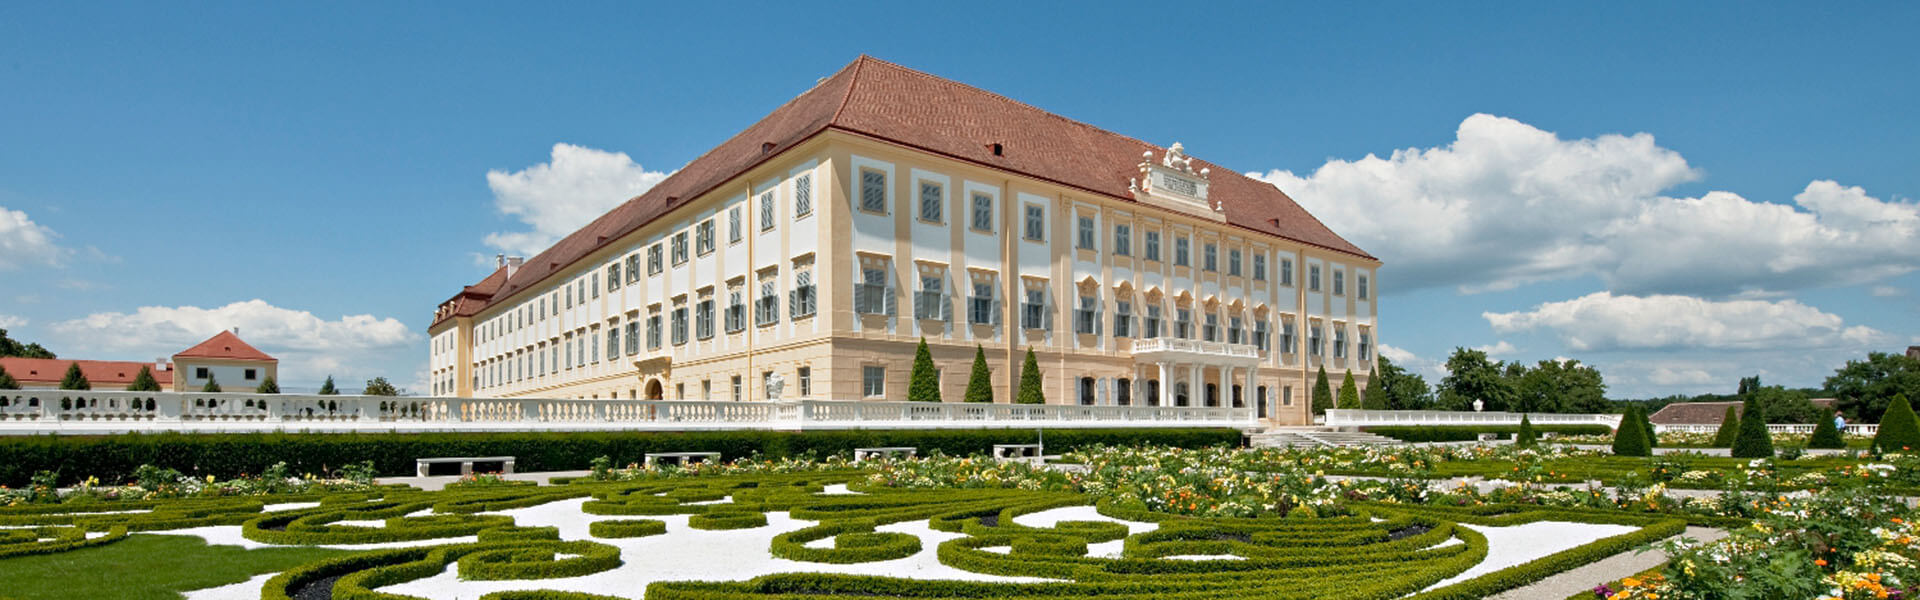 Schloss Hof Landgarten und Lustschloss